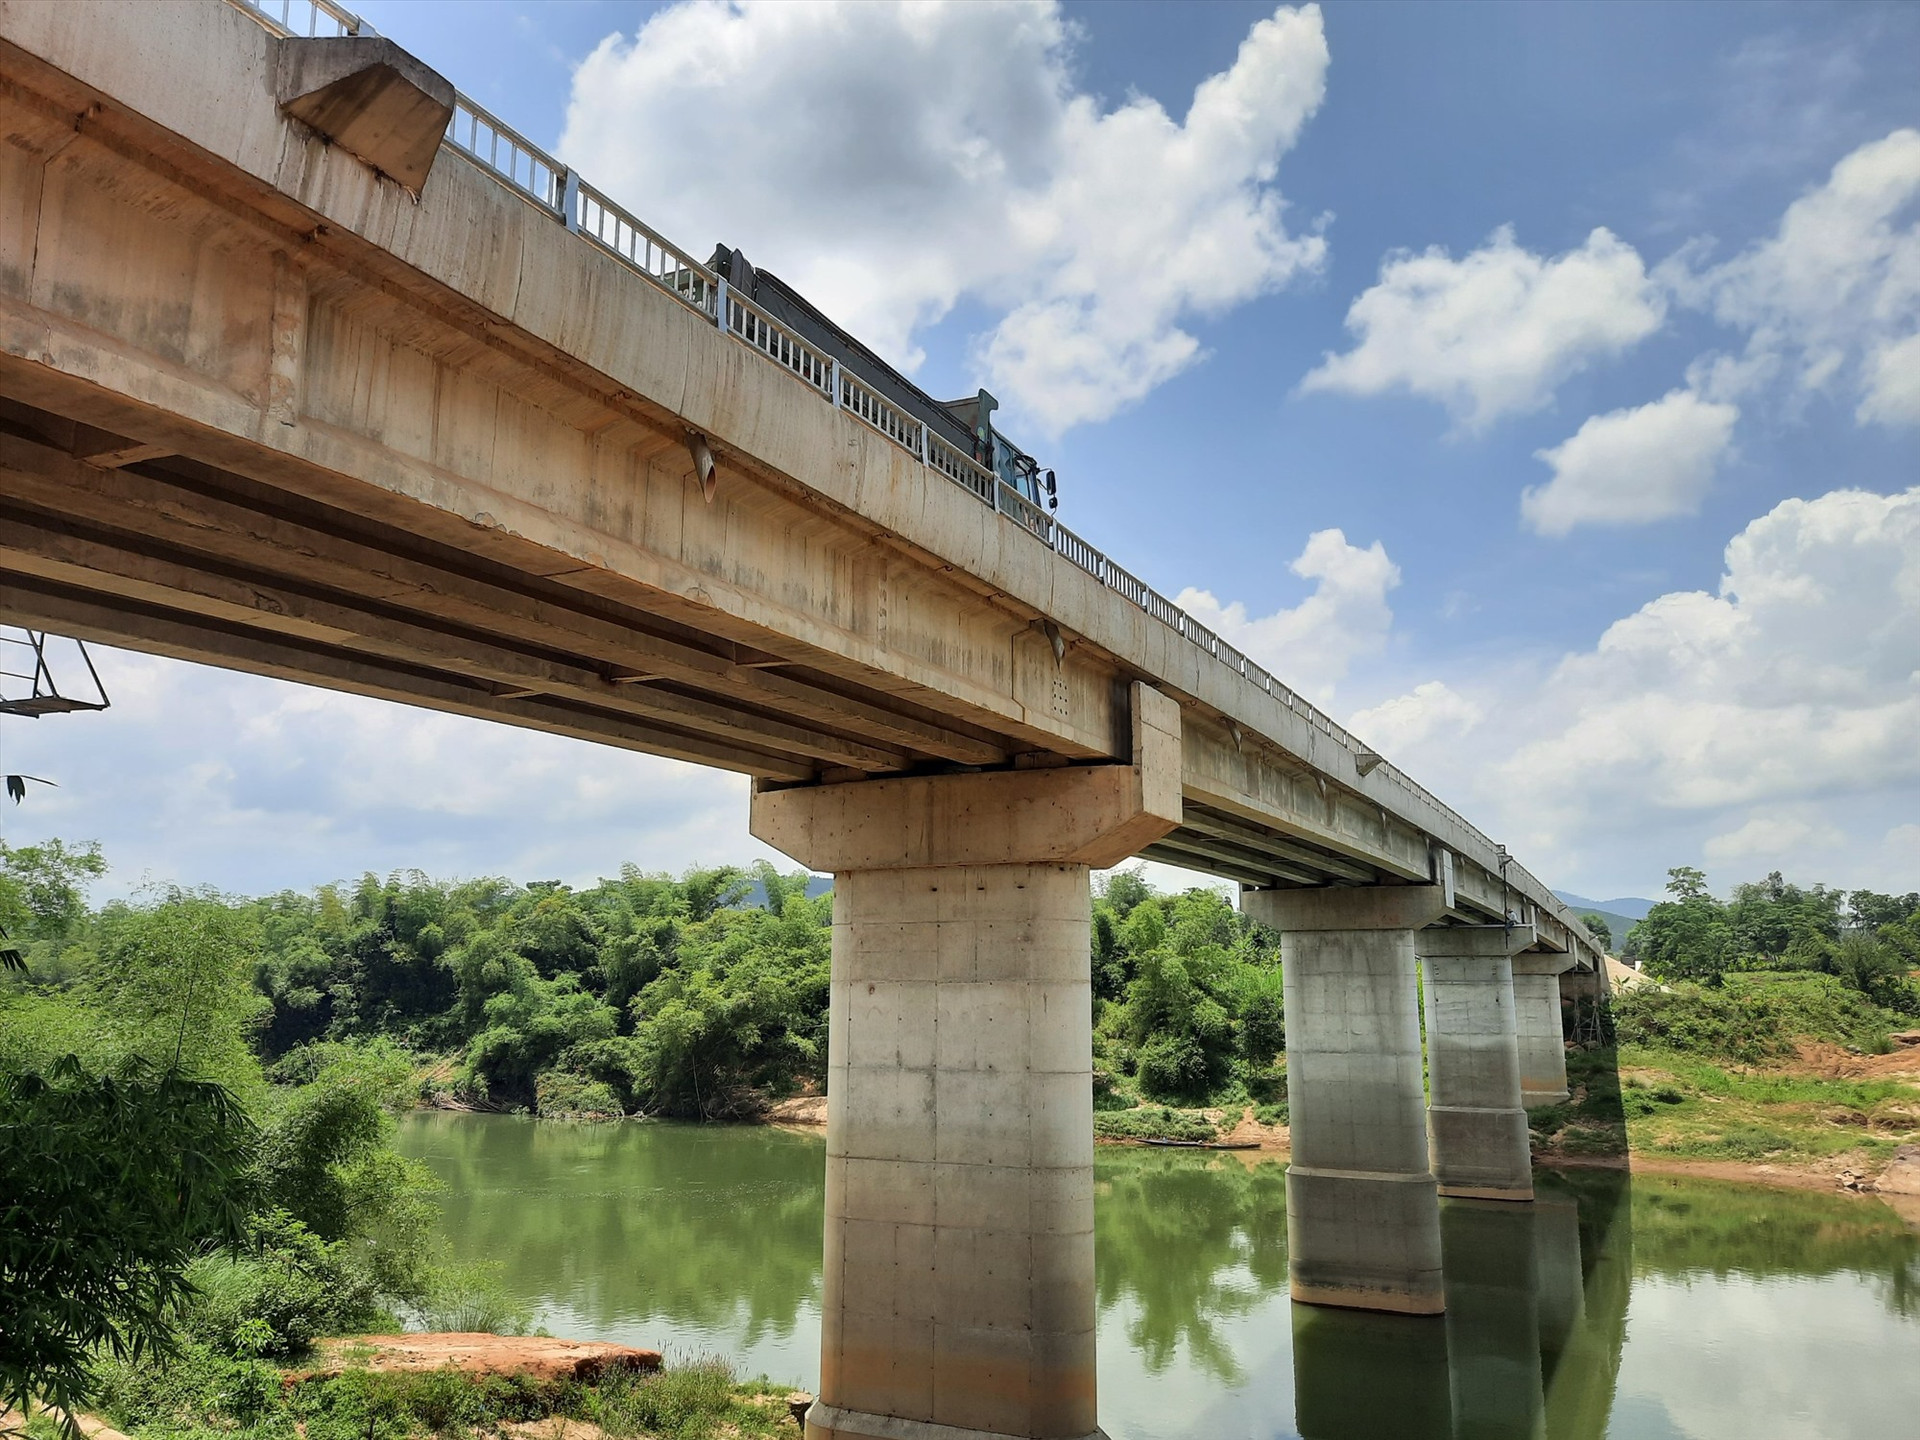 Sau hơn 2 năm xây dựng, cầu Sông Khang hoàn thành đã nối 2 bờ, tạo thuận lợi trong giao thông của người dân địa phương. Ảnh: A.Q